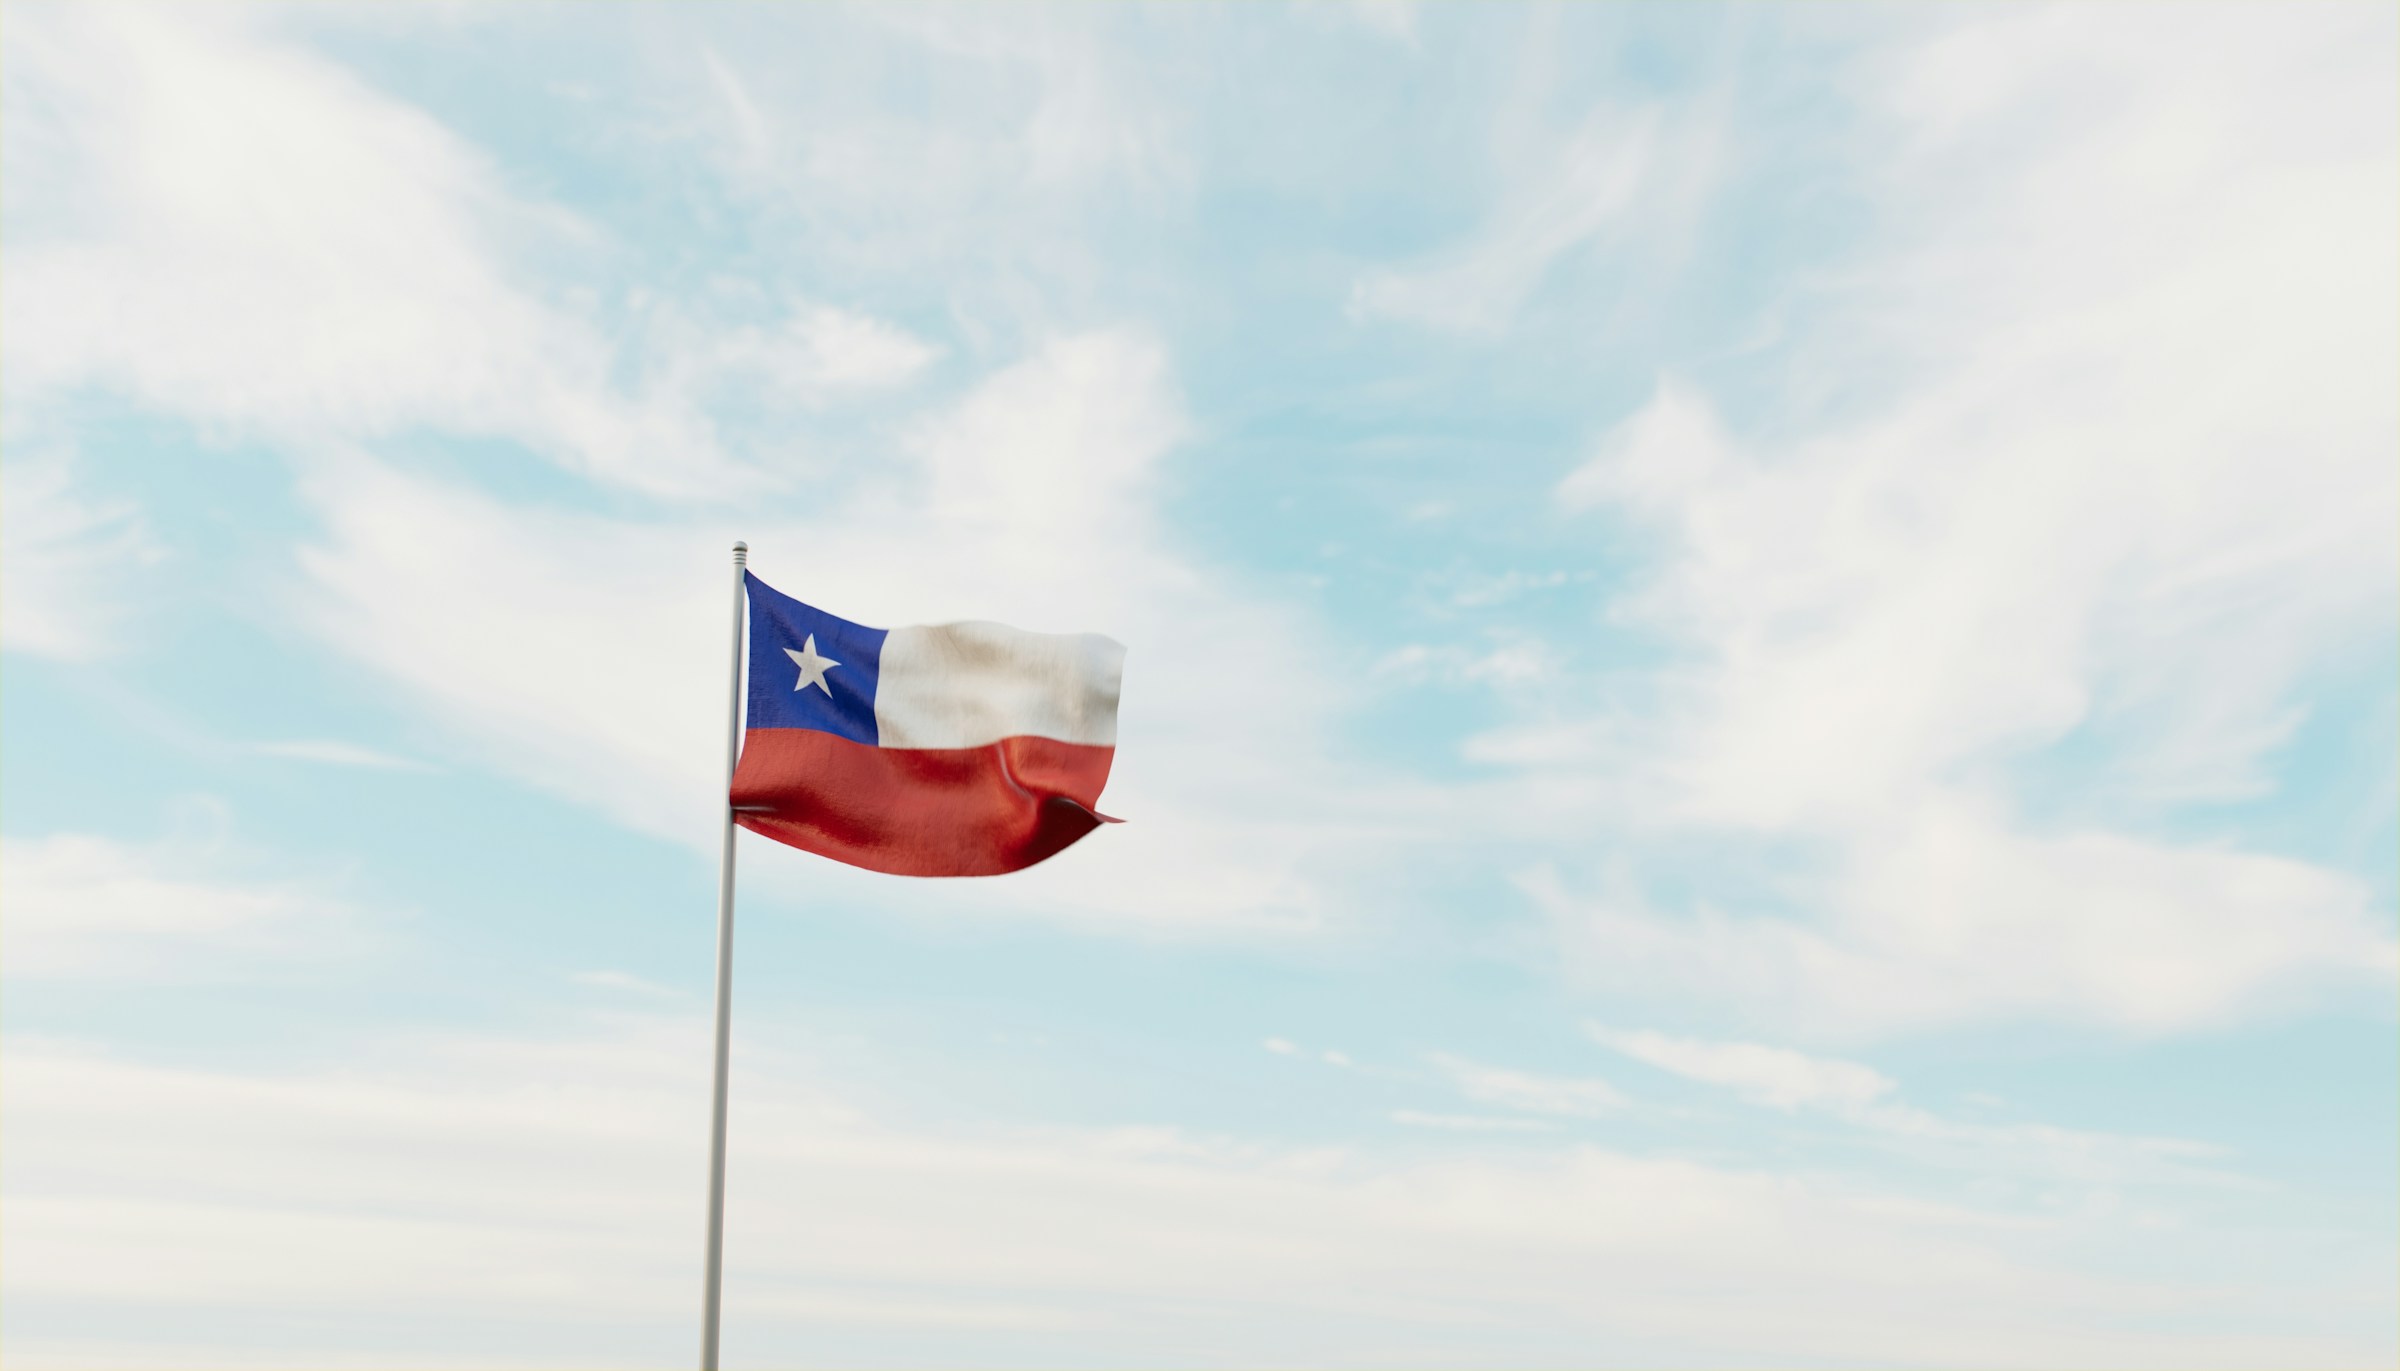 Chilenska flaggan vajar mot en klar himmel med lätta moln.